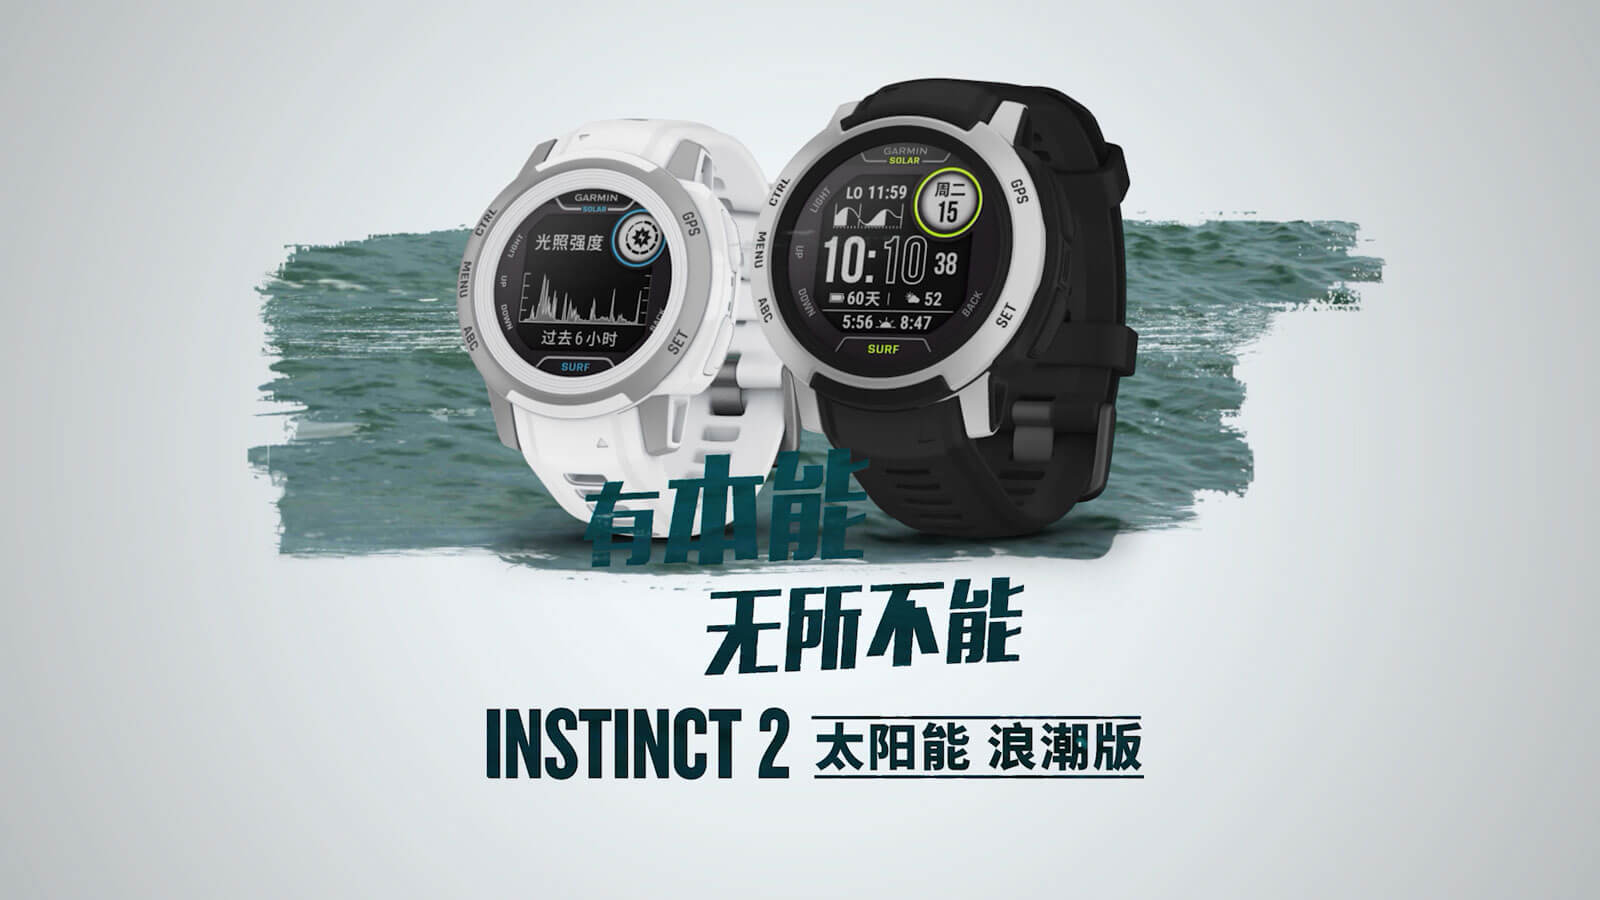 Instinct 2 浪潮版 - 具备水上活动功能的 GPS 智能手表